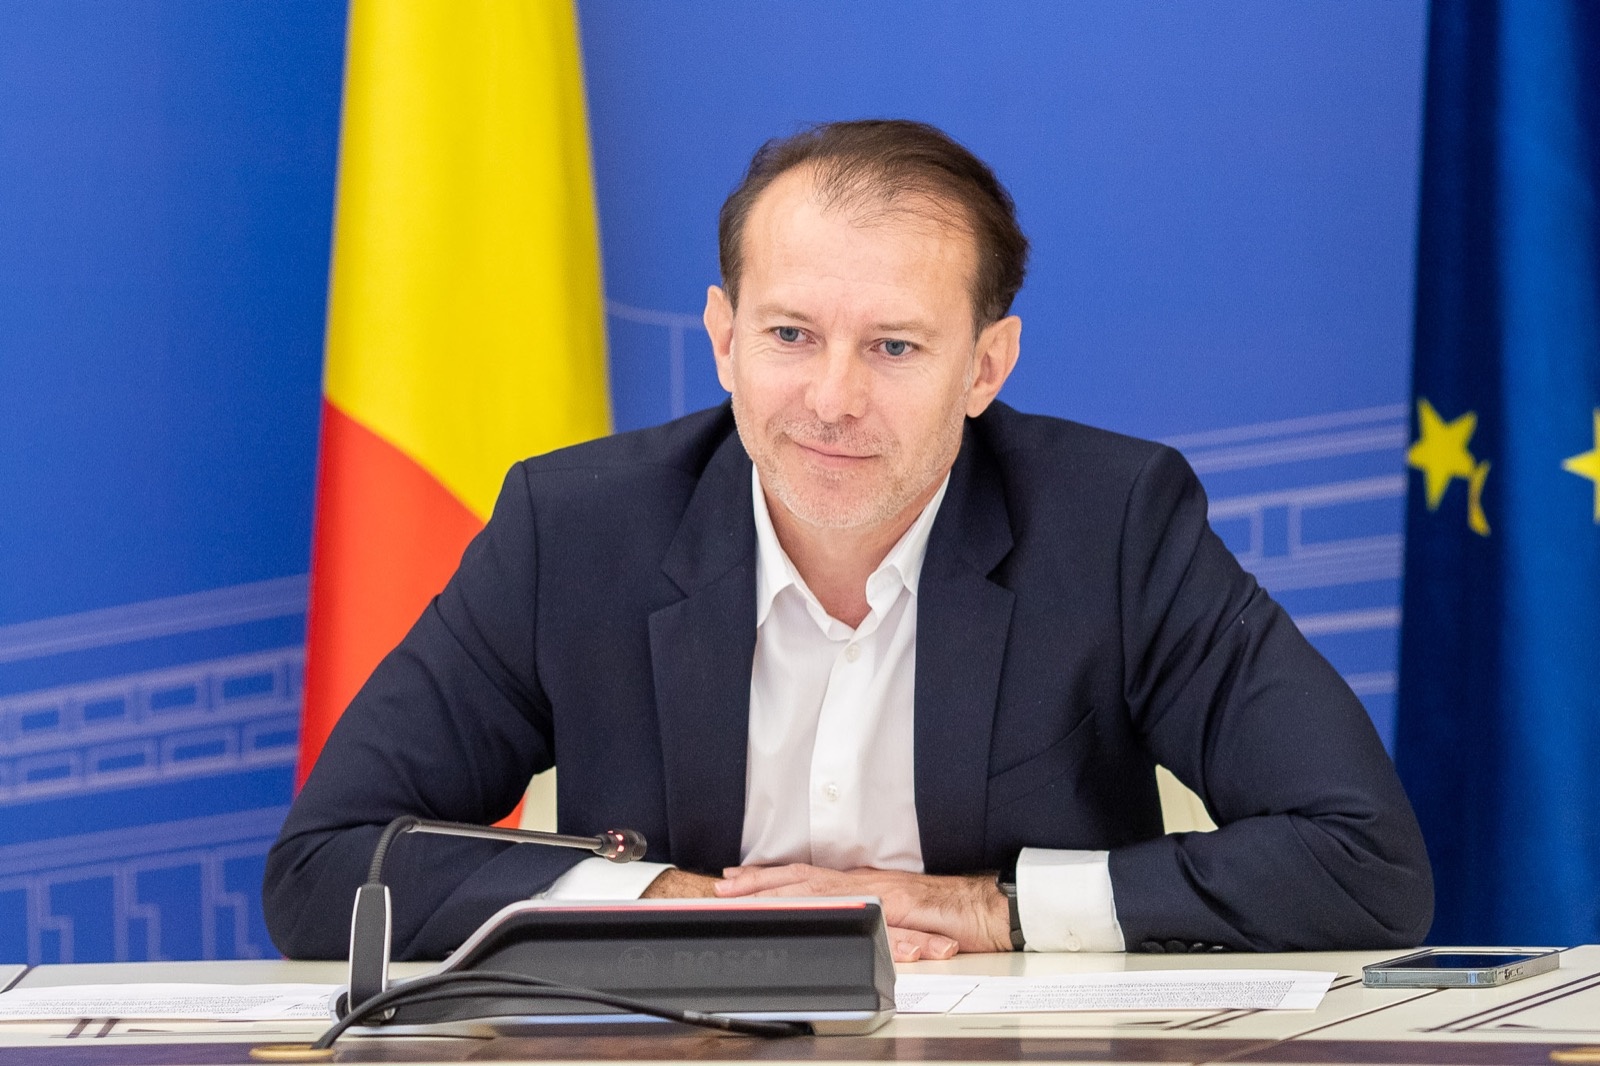 Florin Cîțu ar putea să fie ministru într-un guvern Cioloș, spune Barna